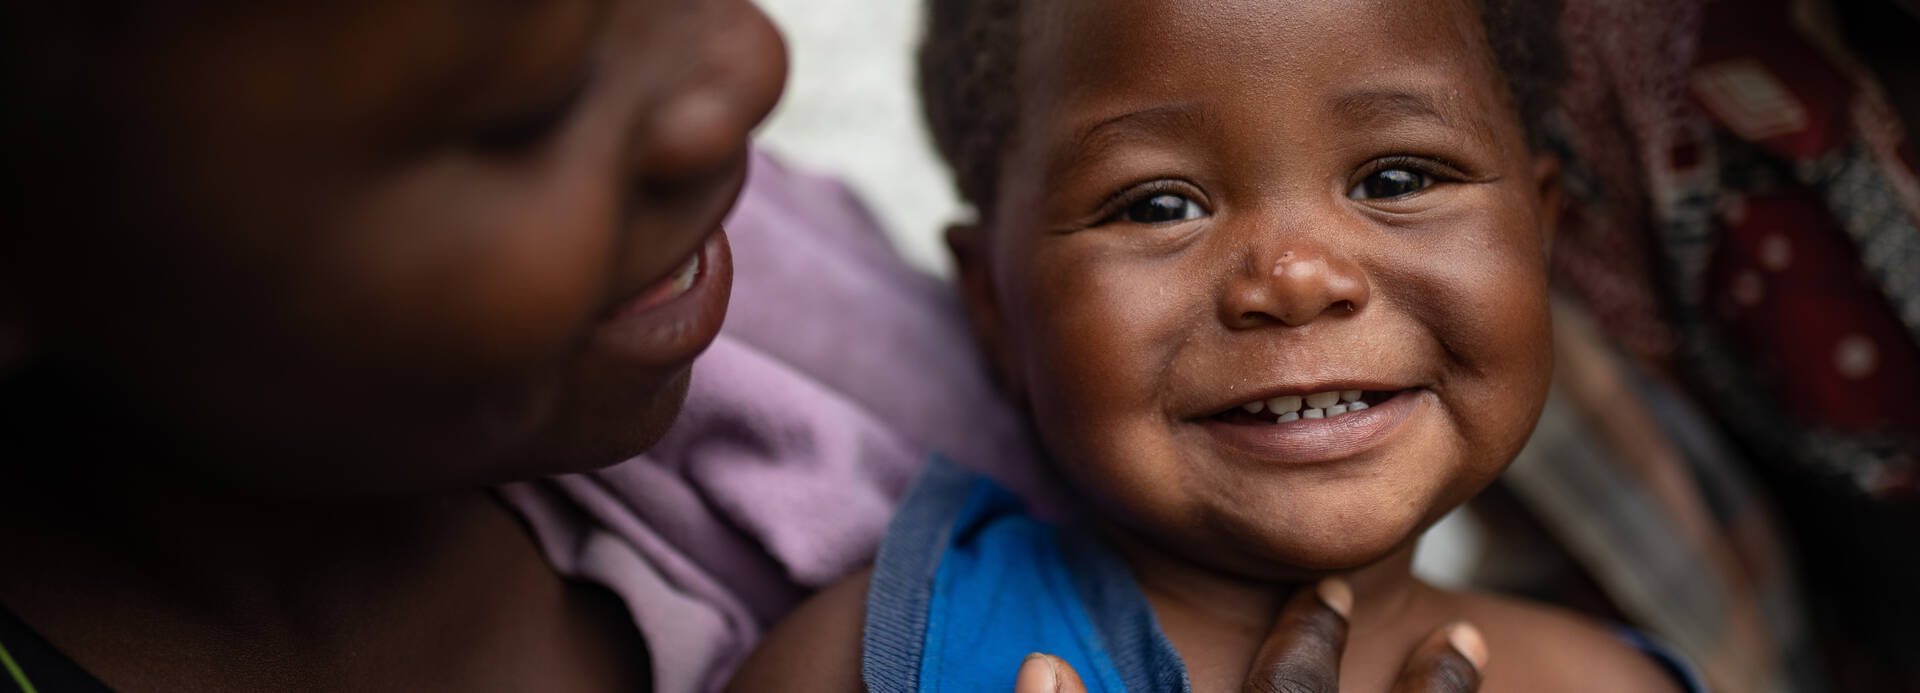 Ein Kleinkind schaut lachend in die Kamera, während die Mutter es beschützend hält und anlächelt